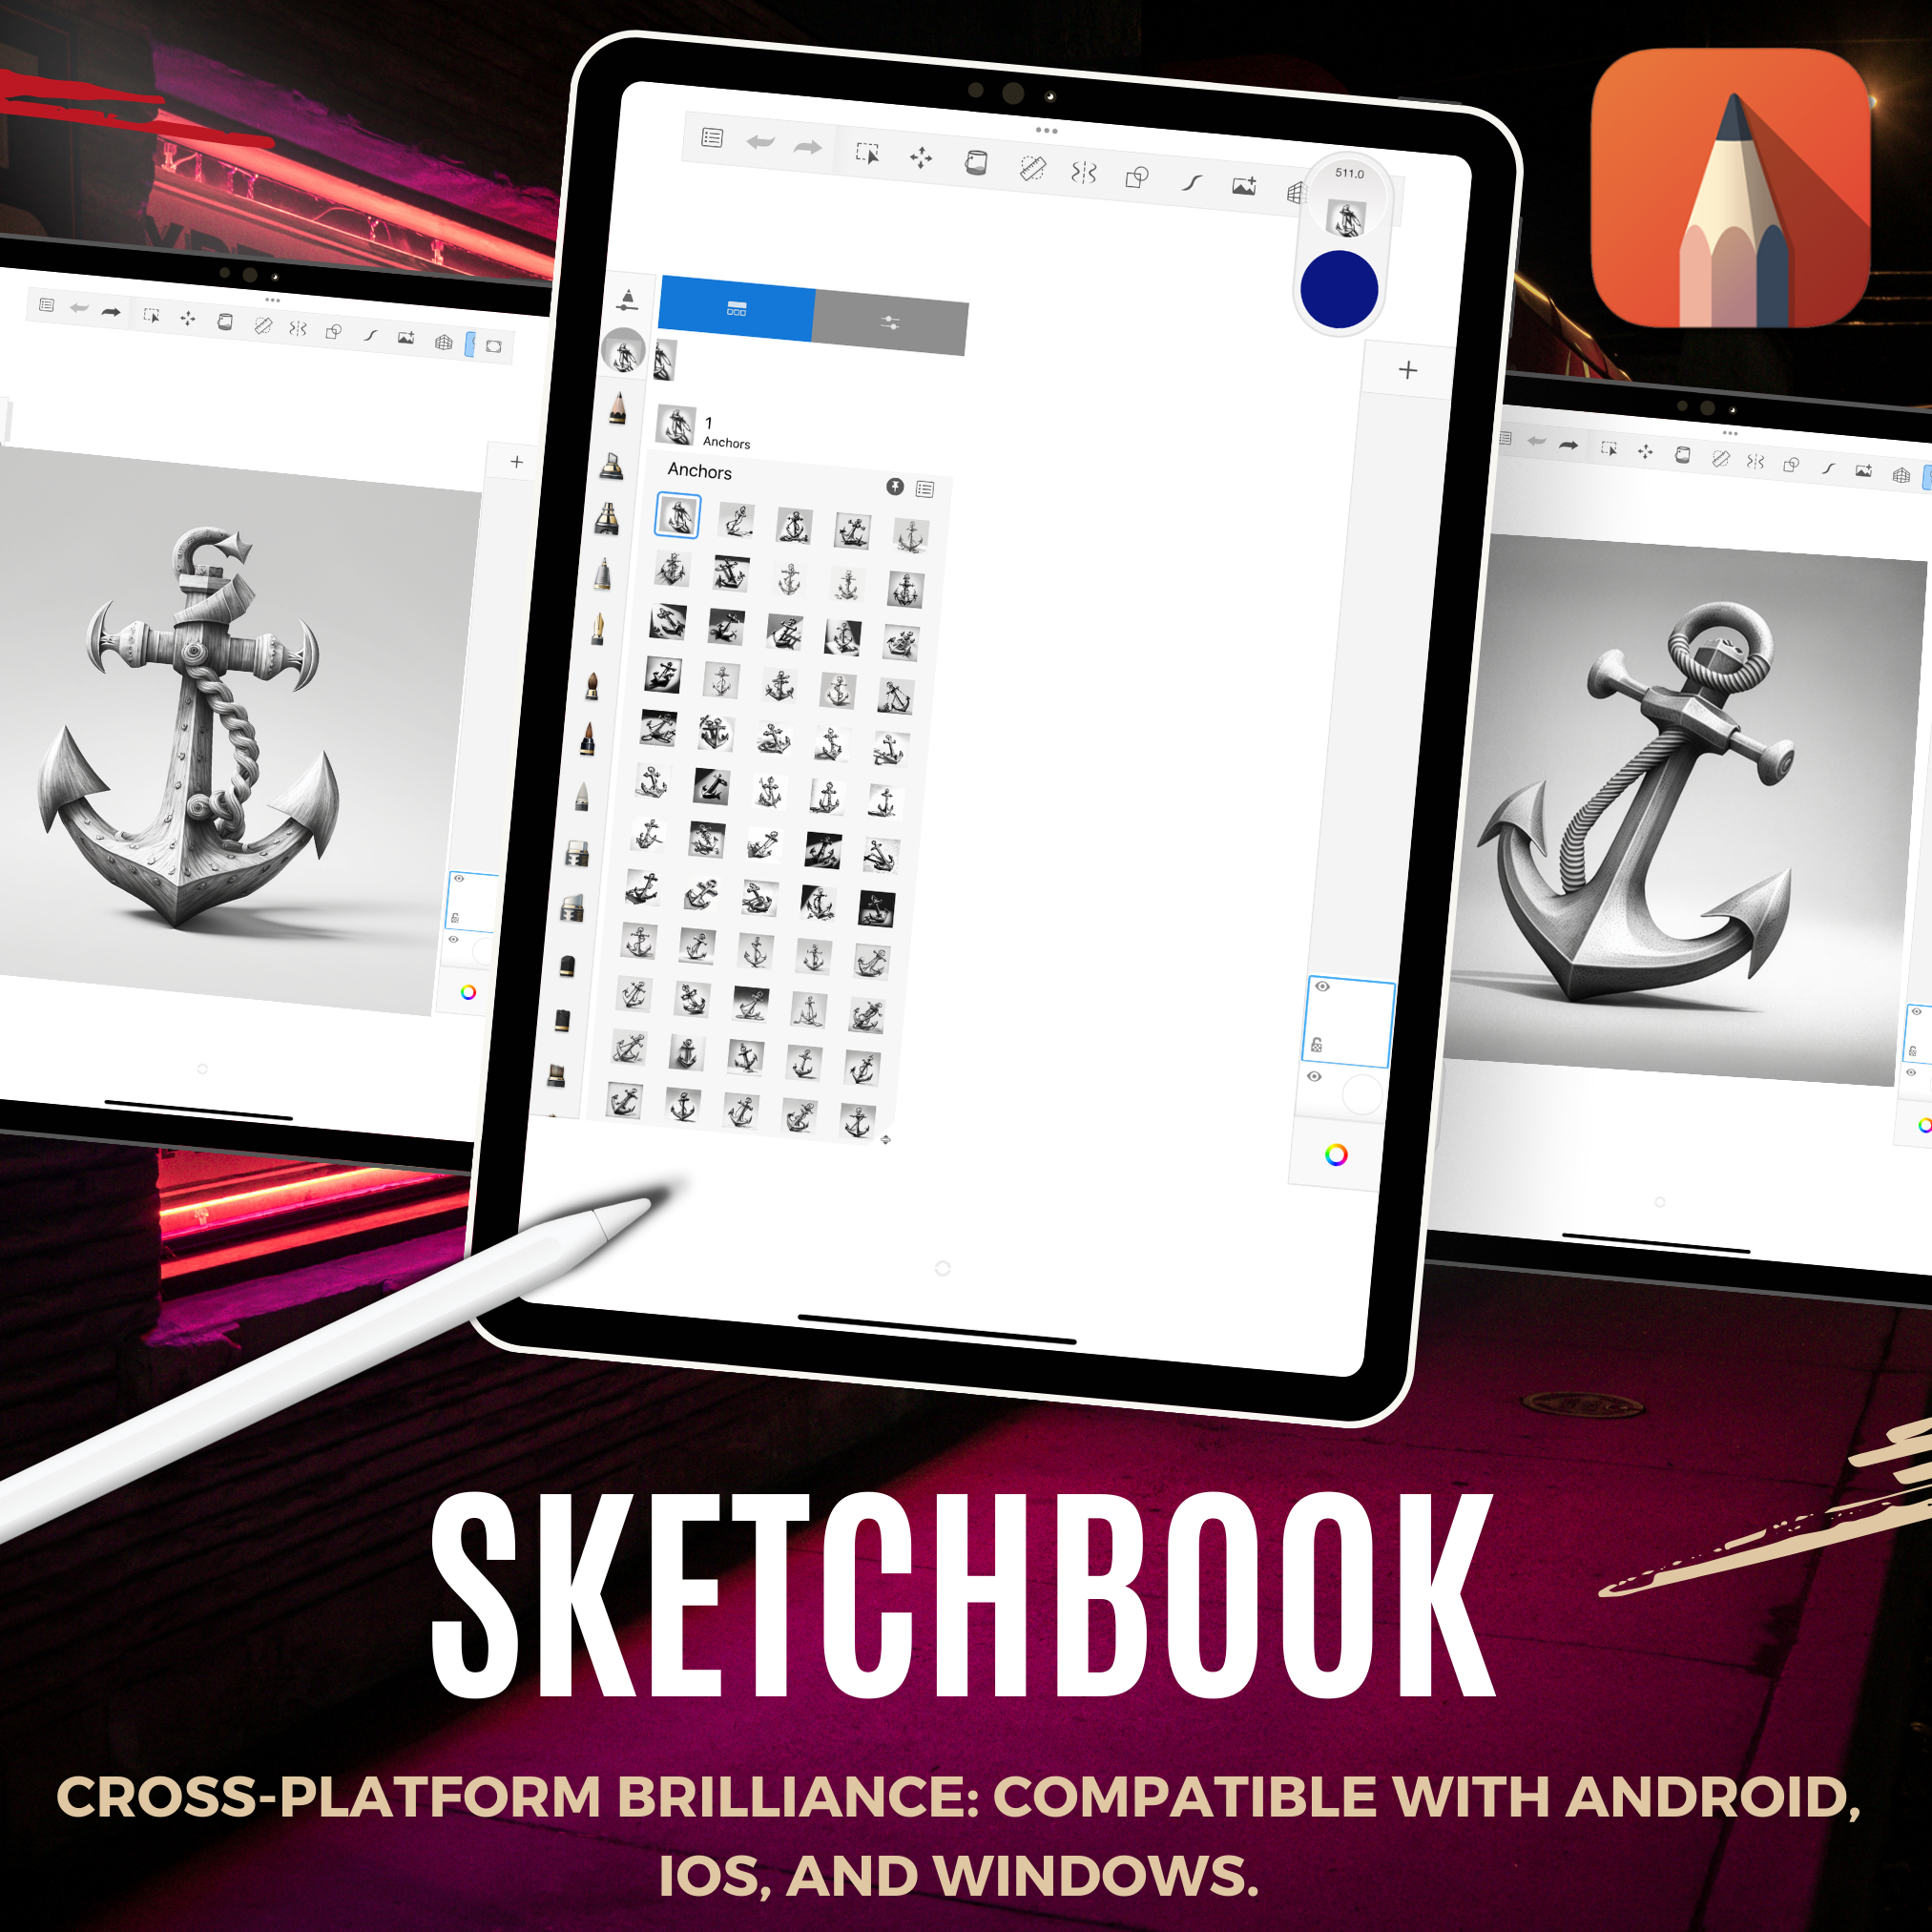 Digitale Tattoo-Element-Designsammlung „Anchors“: 100 Procreate- und Skizzenbuchbilder